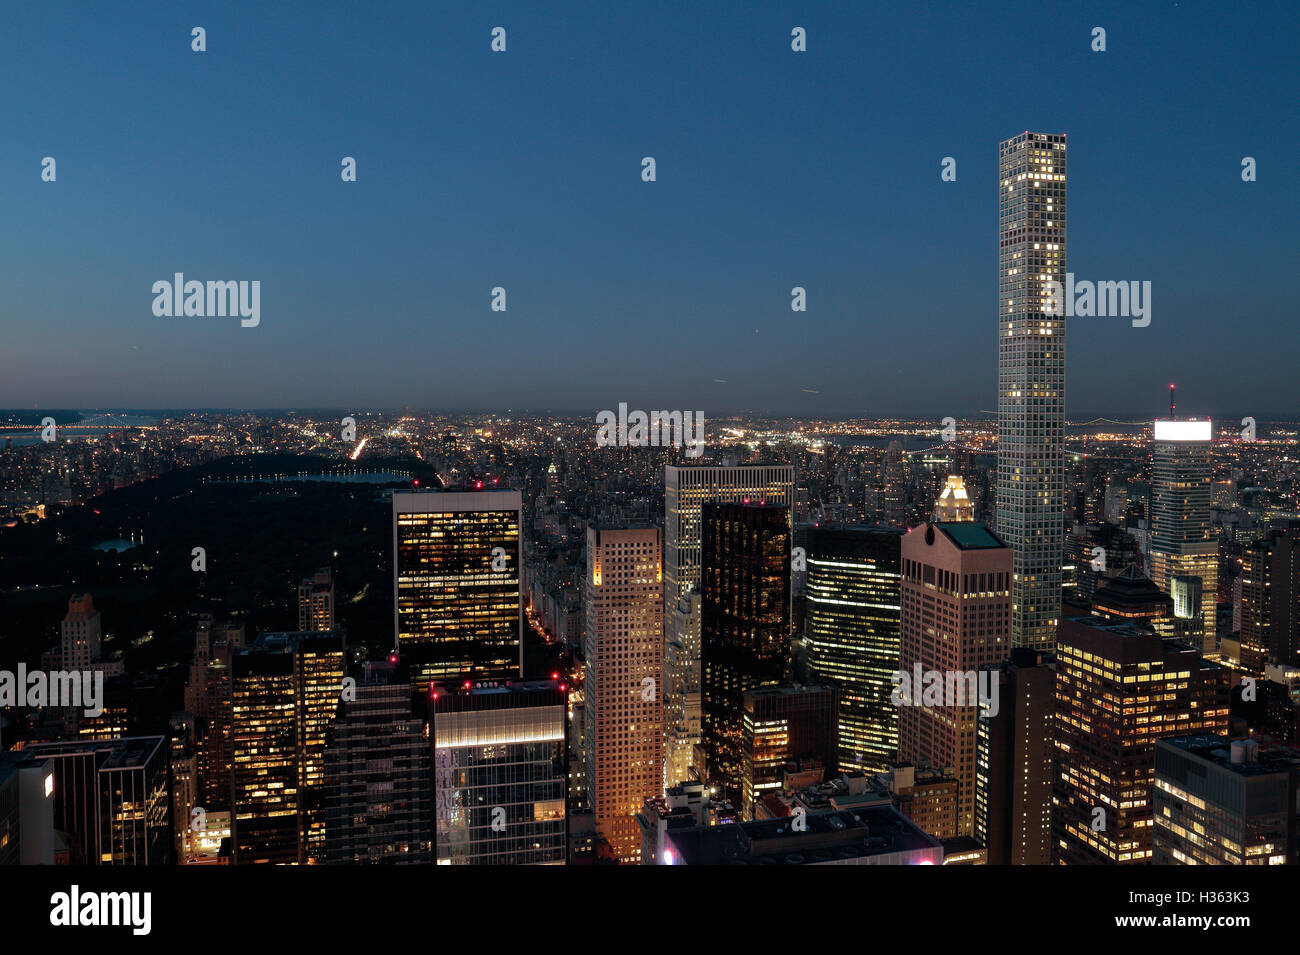 Am frühen Abend aus der Vogelperspektive in Richtung Central Park in Manhattan, New York City, New York, Vereinigte Staaten (August 2016). Stockfoto